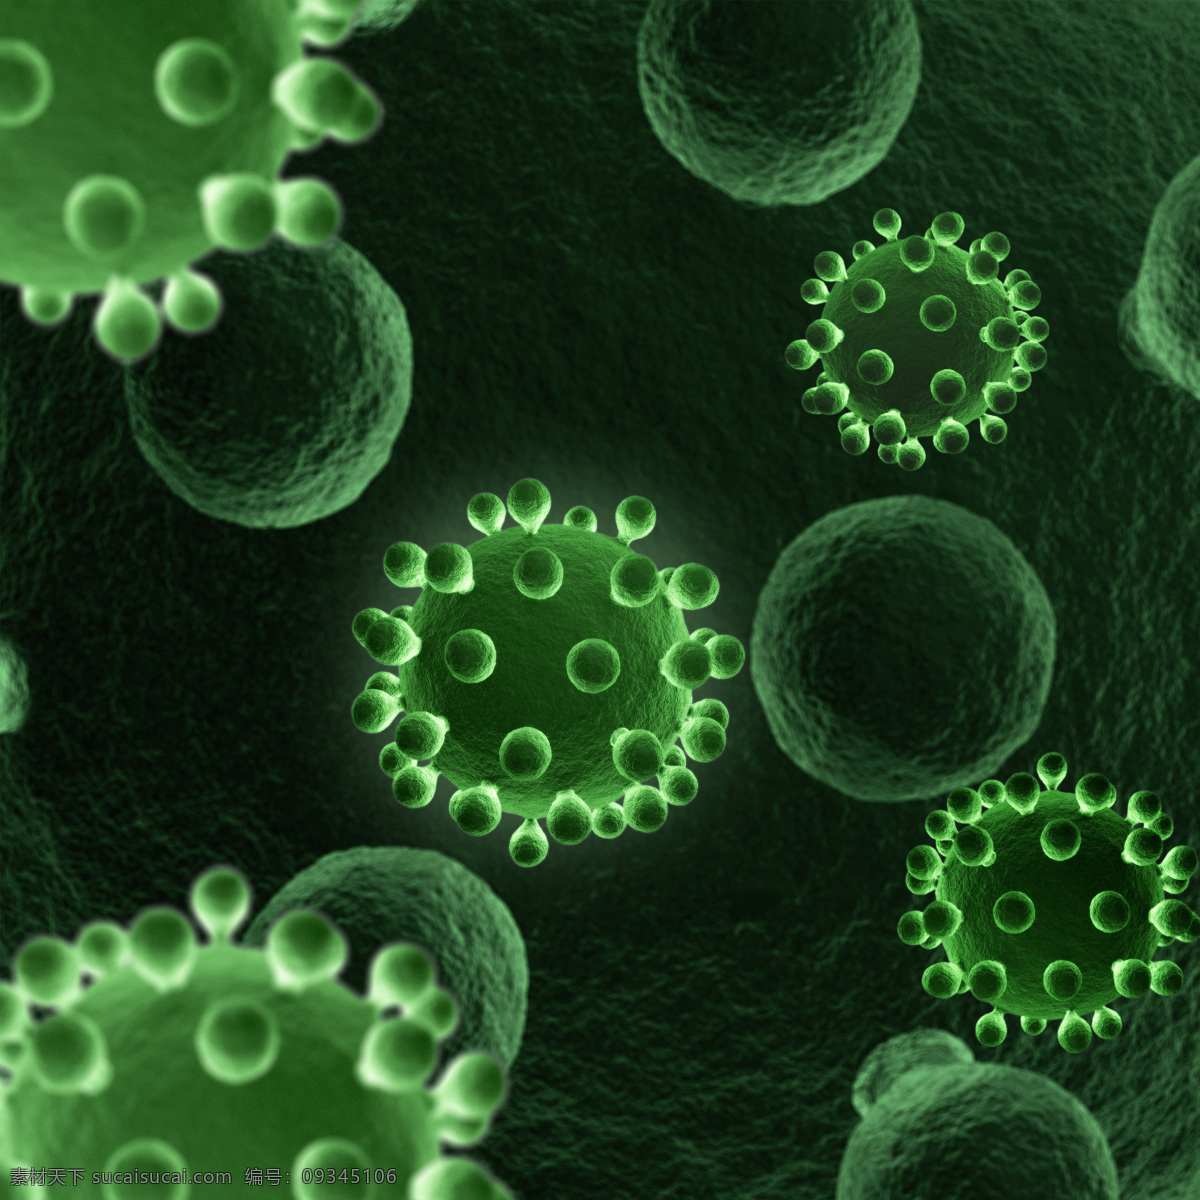 病毒 科学 科学研究 生物 微生物 细胞 细菌 生物学 设计素材 模板下载 显微镜 细微生物 传染病菌 传染病毒 外星病毒 外星细菌 外星生物 现代科技